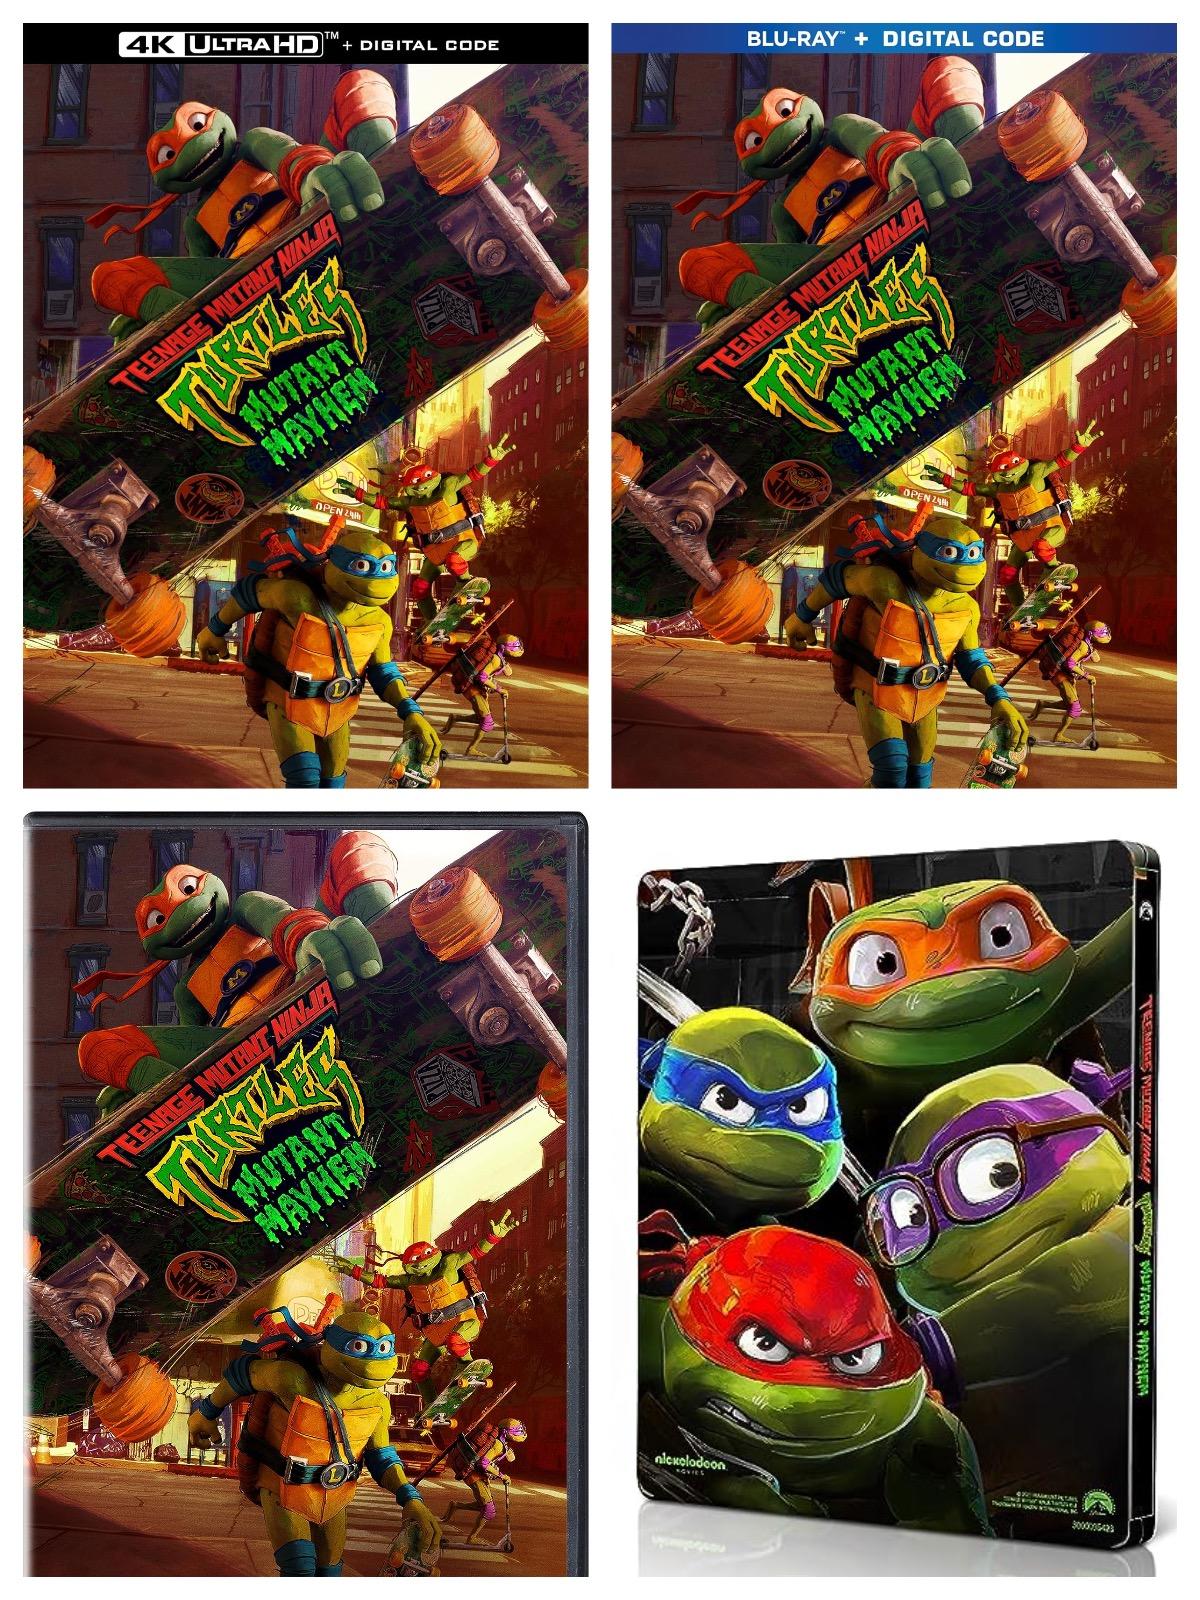 Tortugas-ninja-mutantes-adolescentes-bluray-fecha-de-lanzamiento.jpg